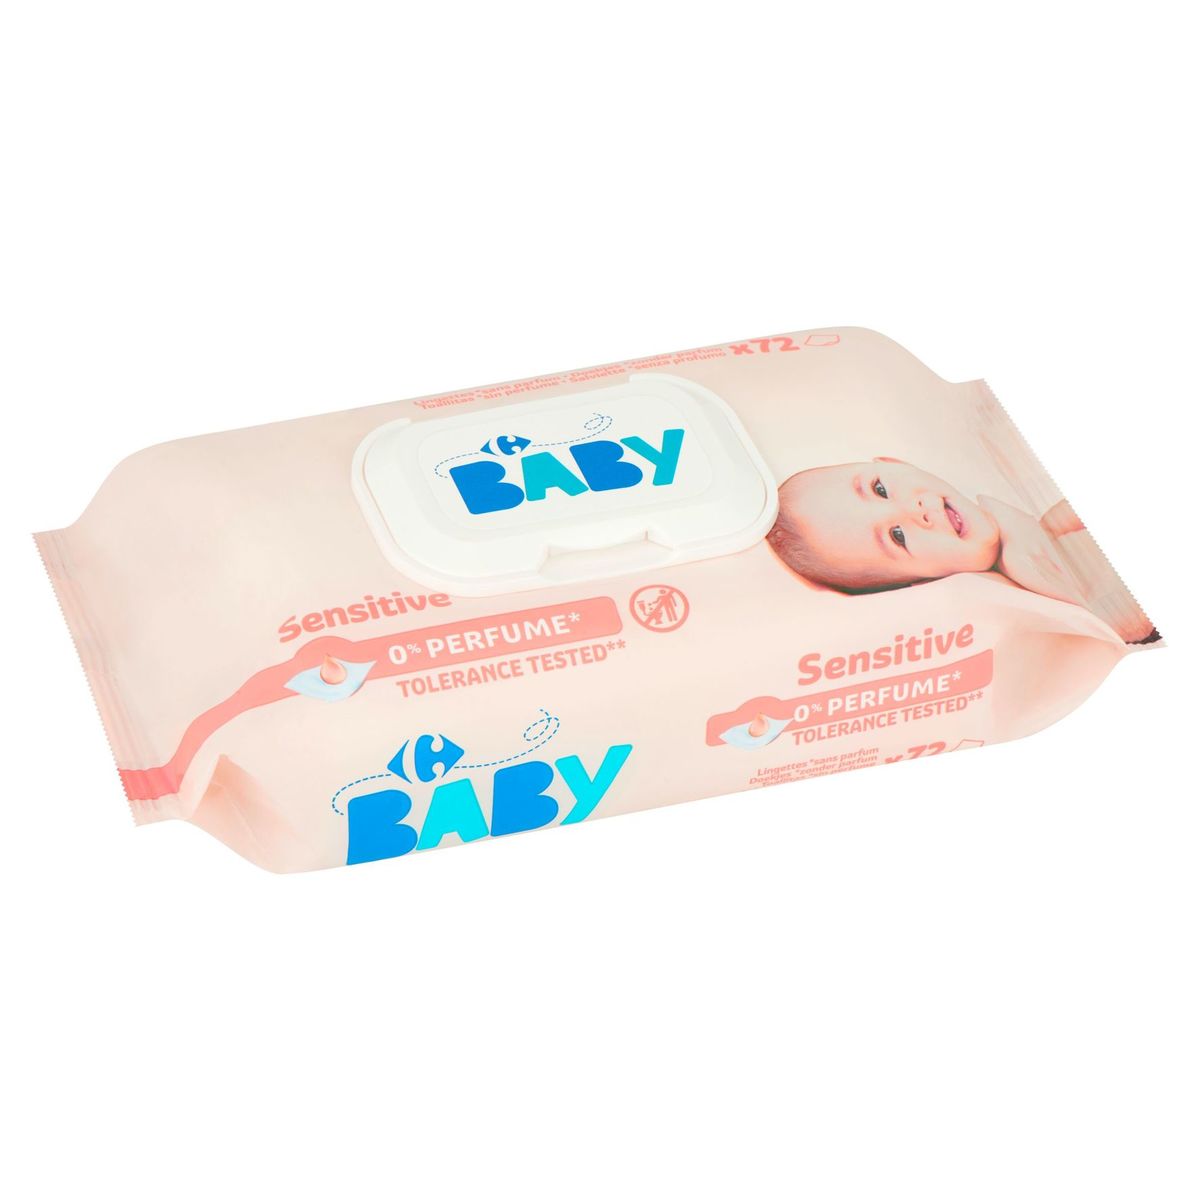 Carrefour Baby Sensitive 72 Pièces